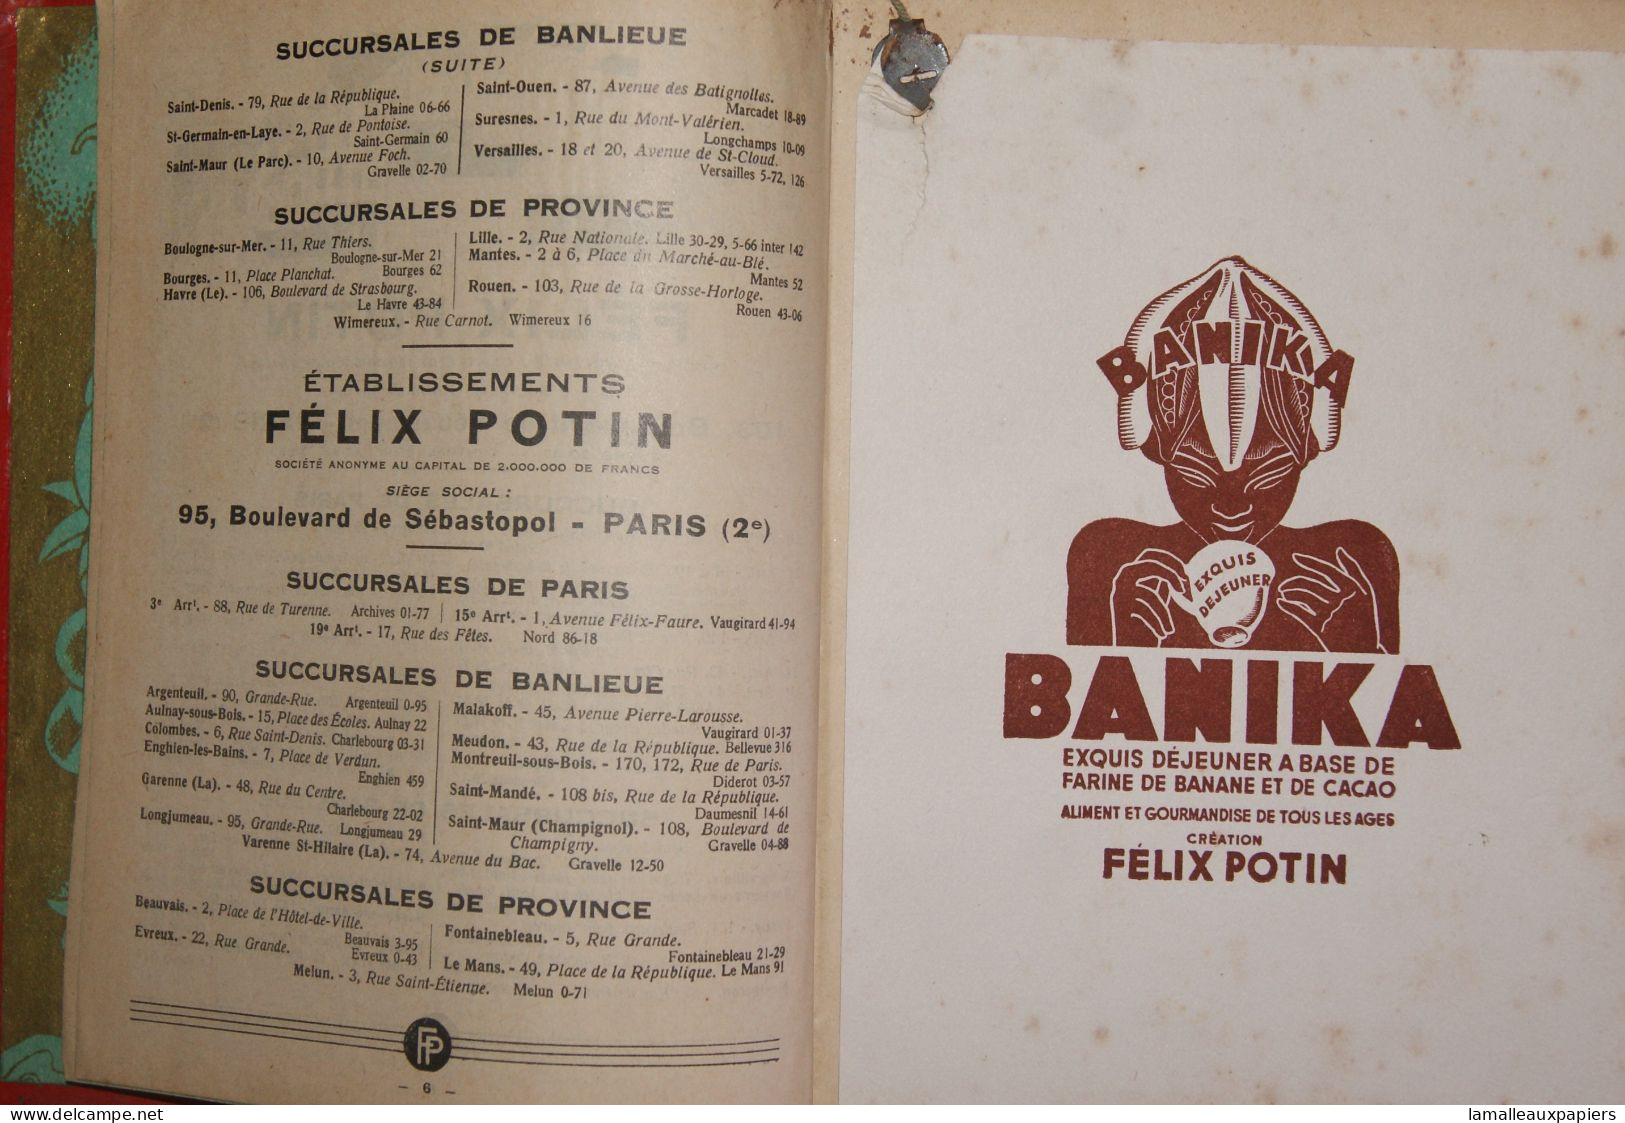 FELIX POTIN 1932 - Agende Non Usate